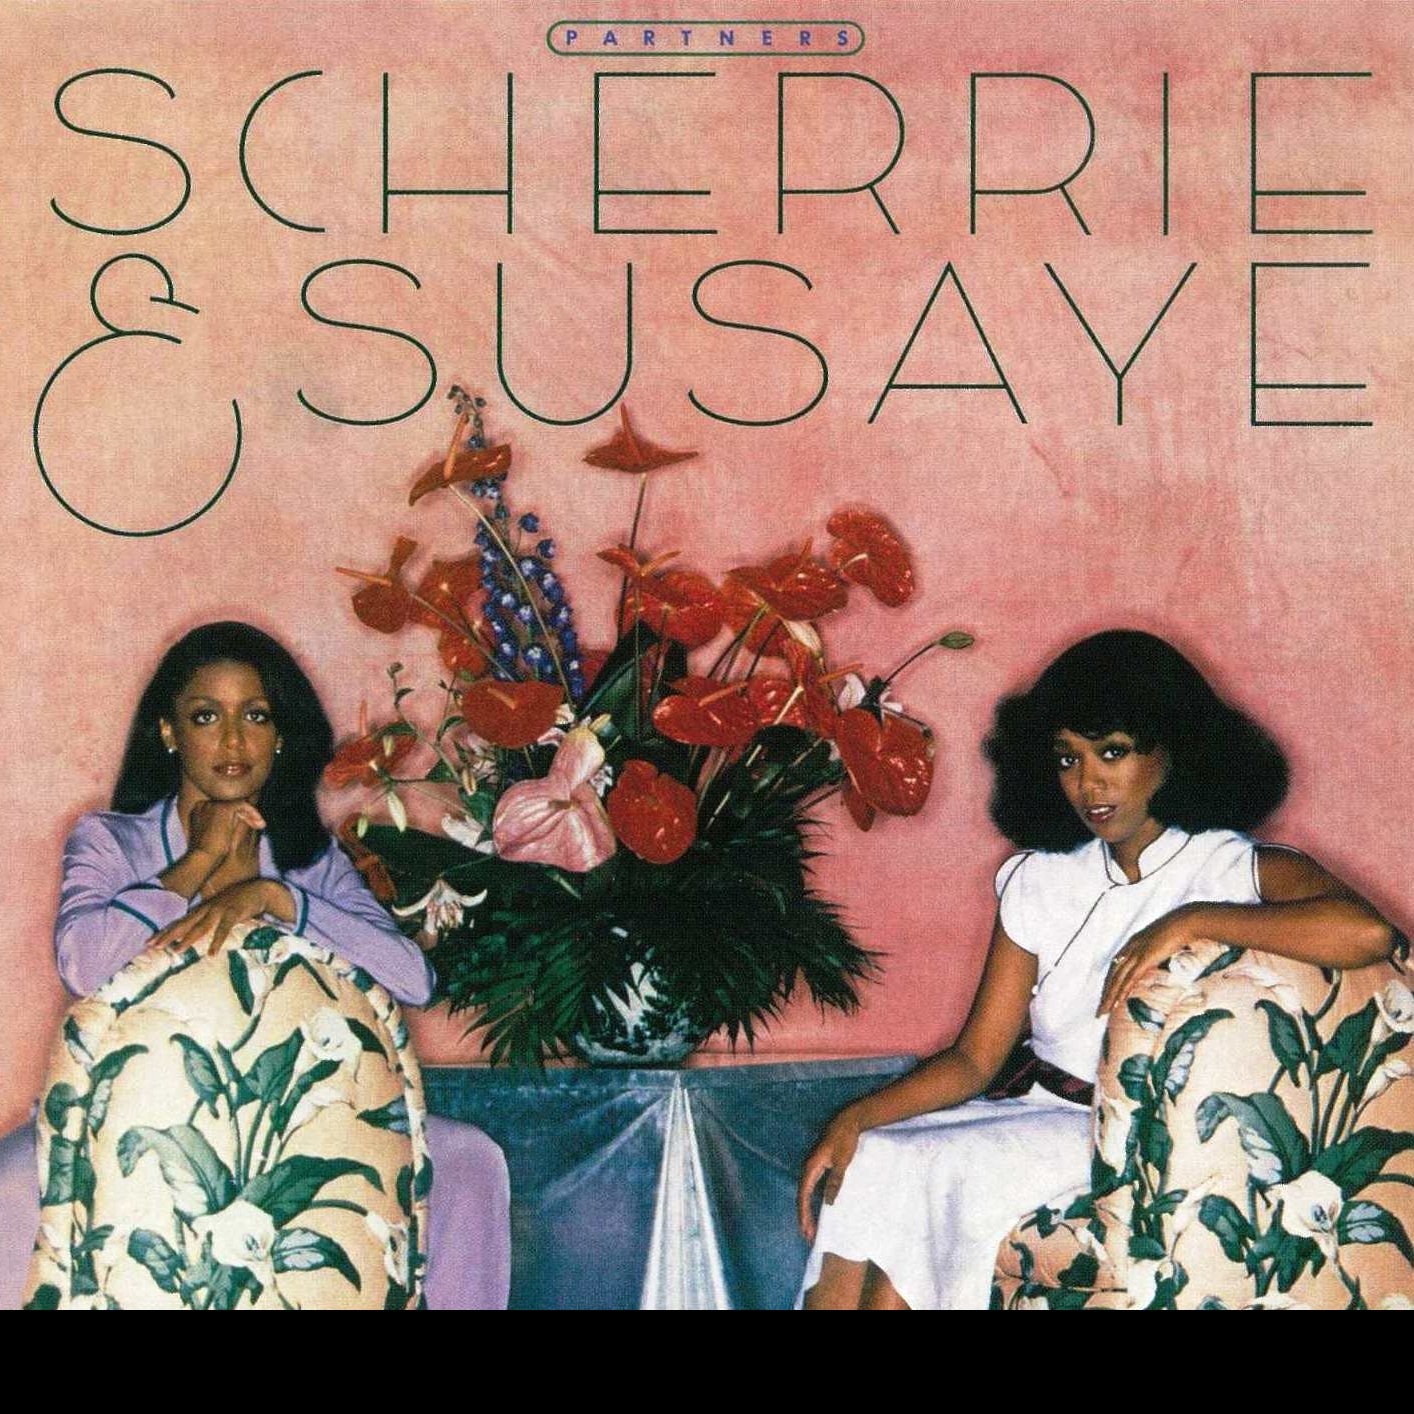 CD Shop - SCHERRIE & SUSAYE PARTNERS